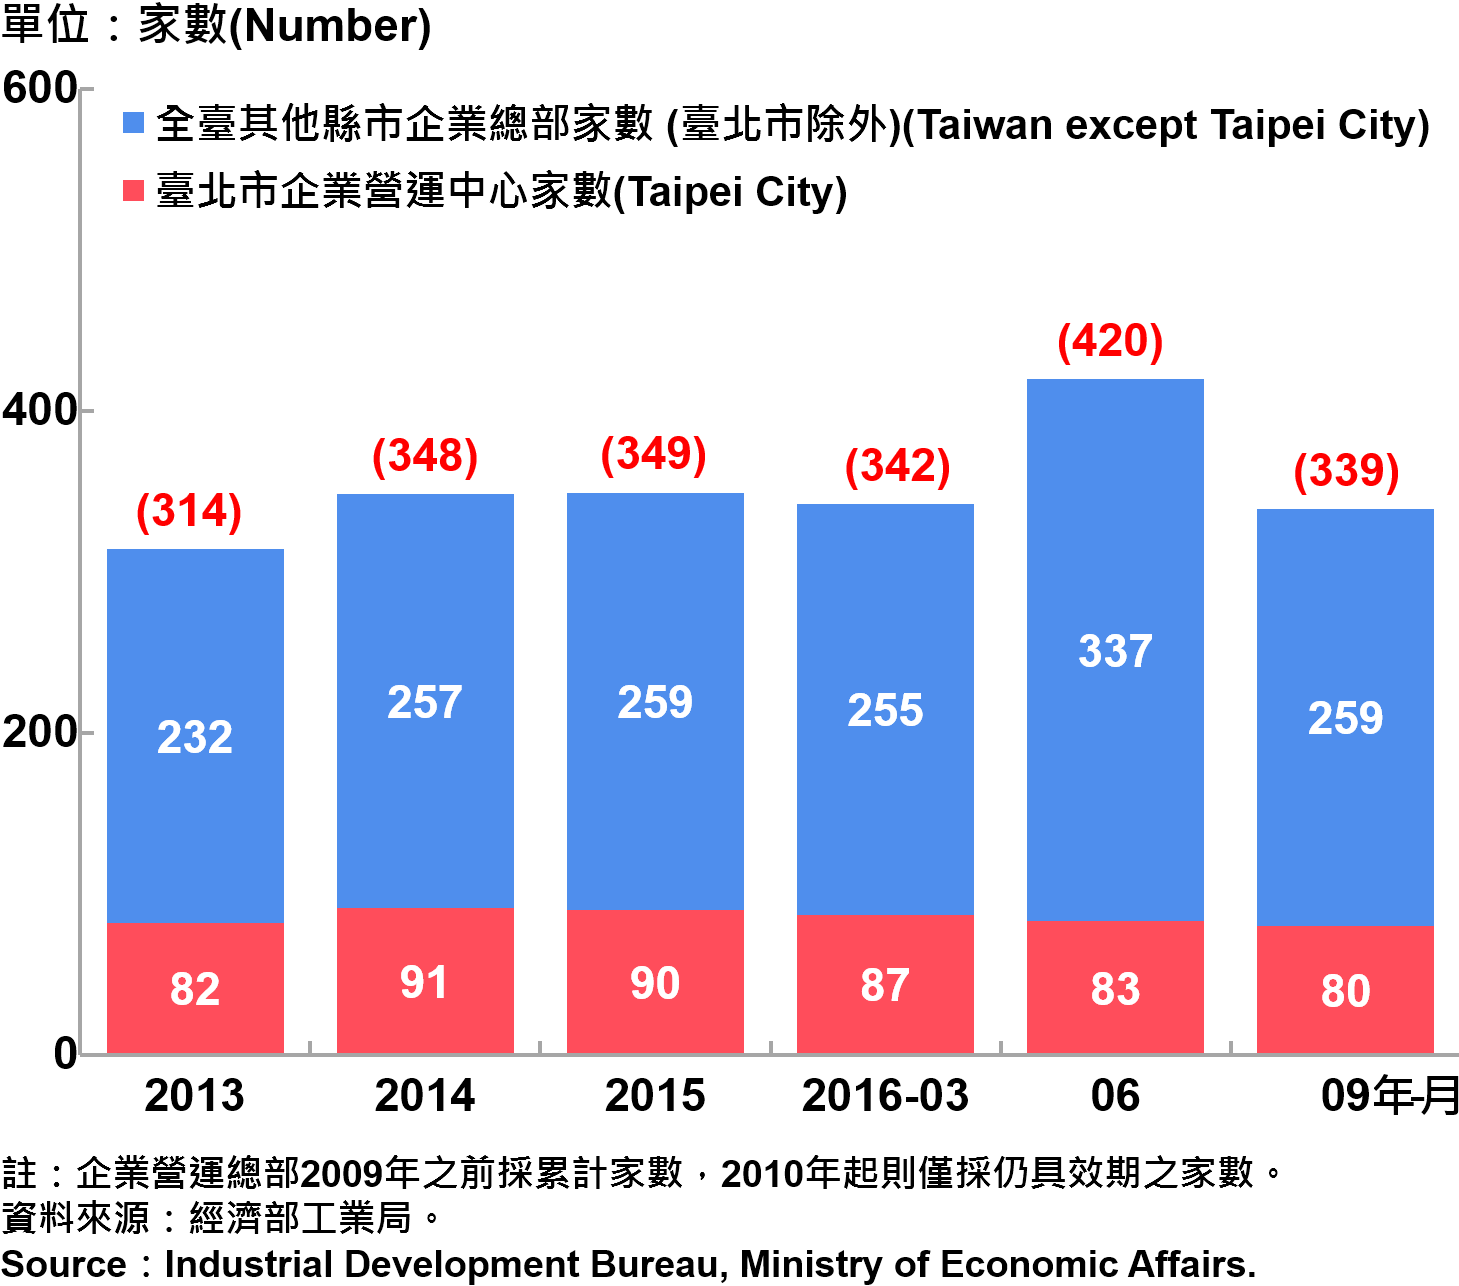 圖15、臺北市企業營運總部之設立家數—2016Q3 Number of Established Enterprise Business Headquarters in Taipei—2016Q3 注：企業營運總部2009年之前採累計家數，2010年起則僅採仍具效期之家數。